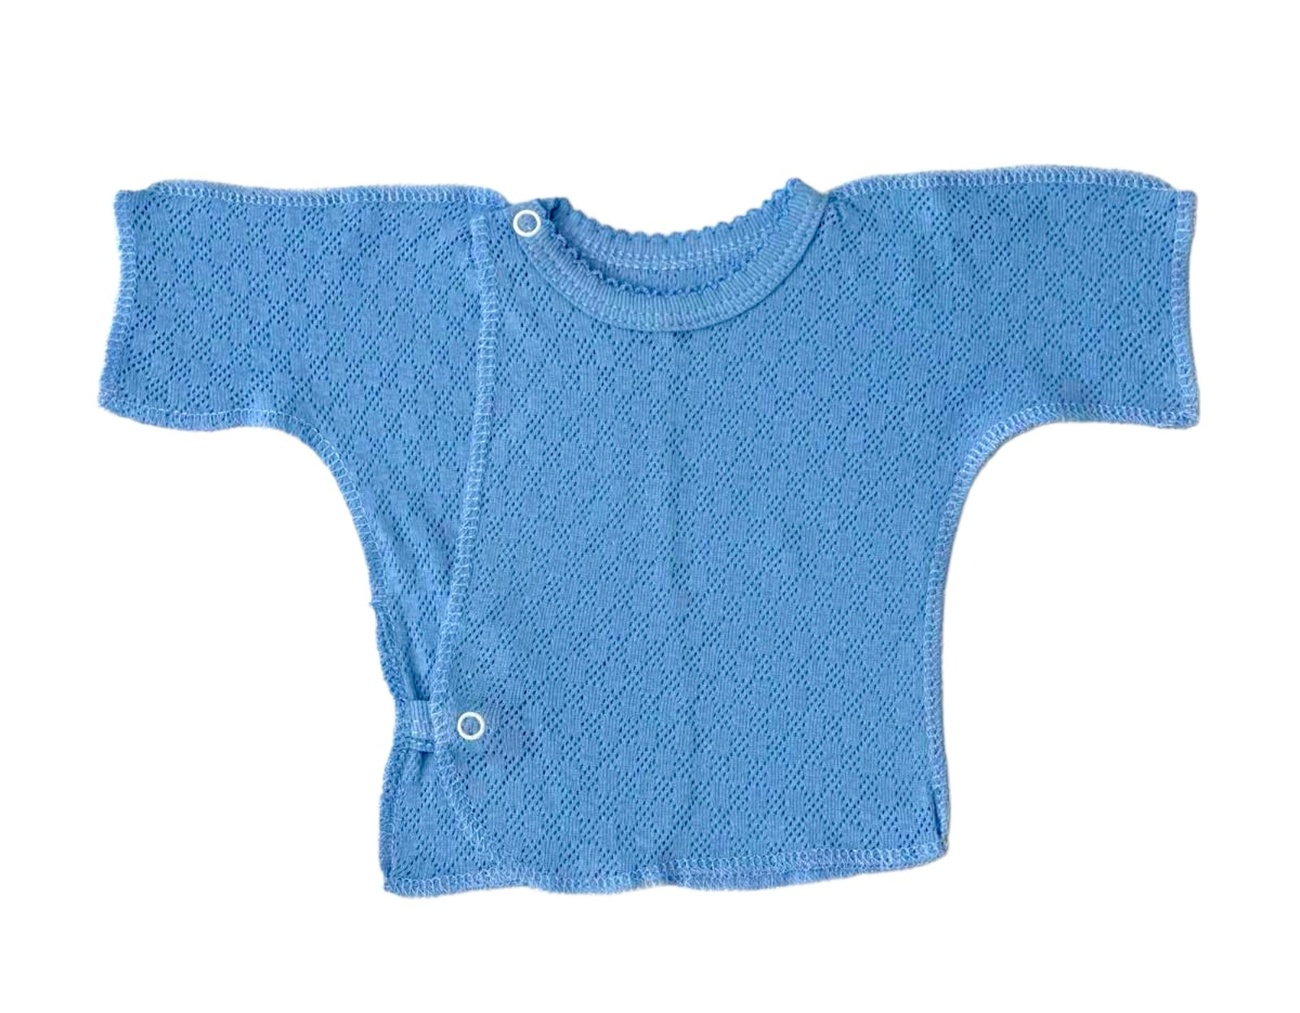 Распашонка с коротким рукавом трансфер голубого цвета, Голубой, 0-1 месяц, 56см